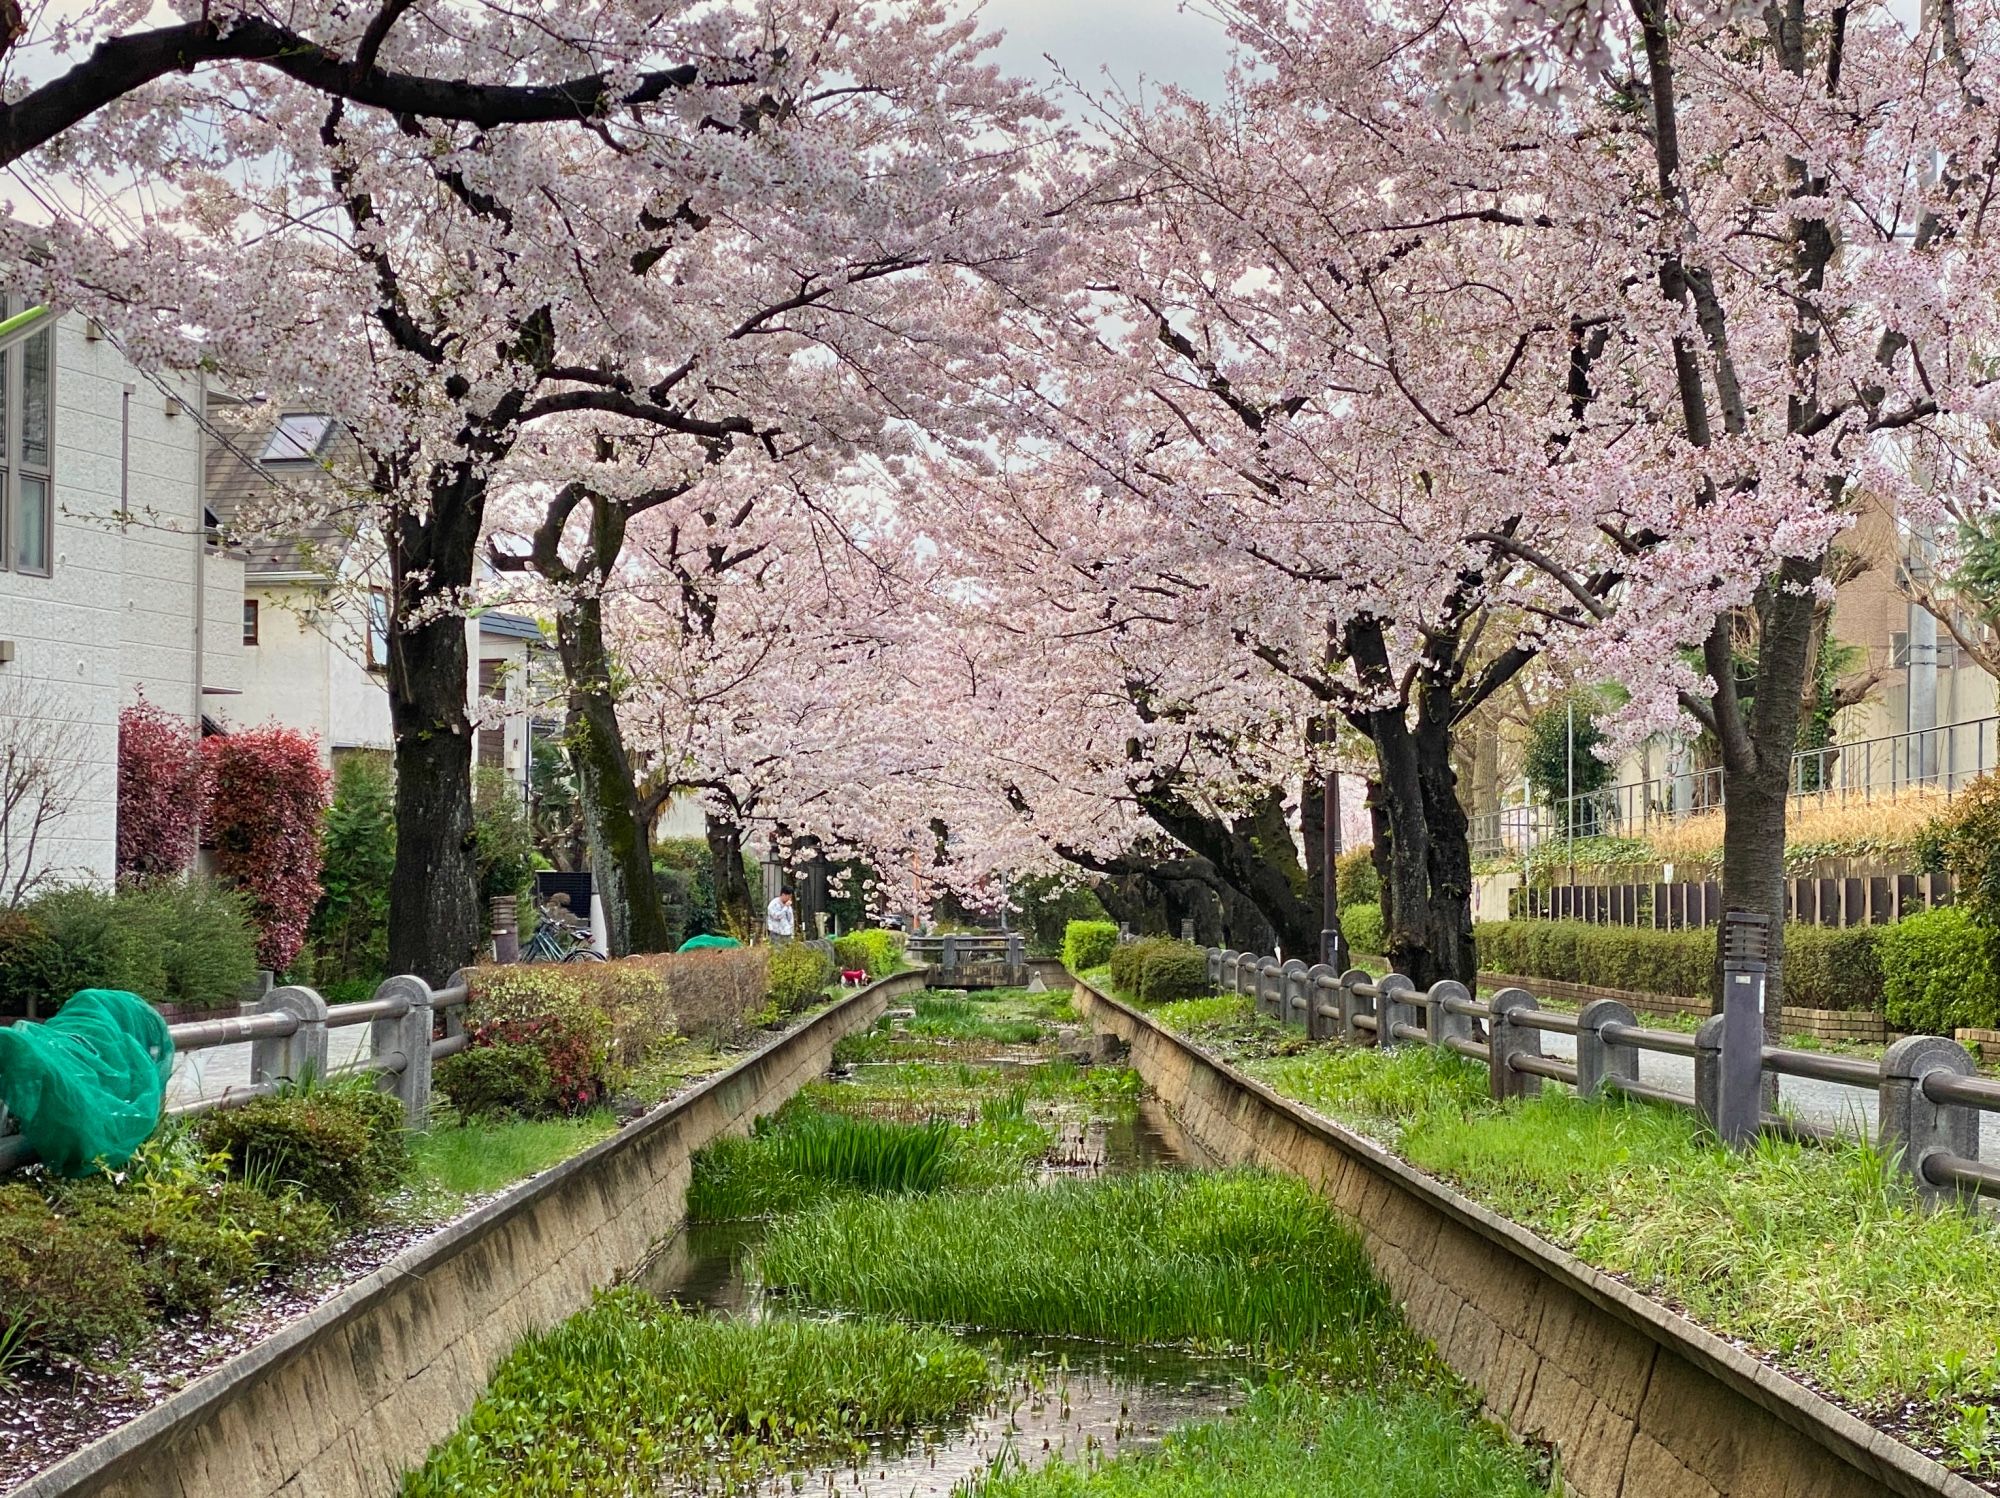 Rainy sakura and long walks